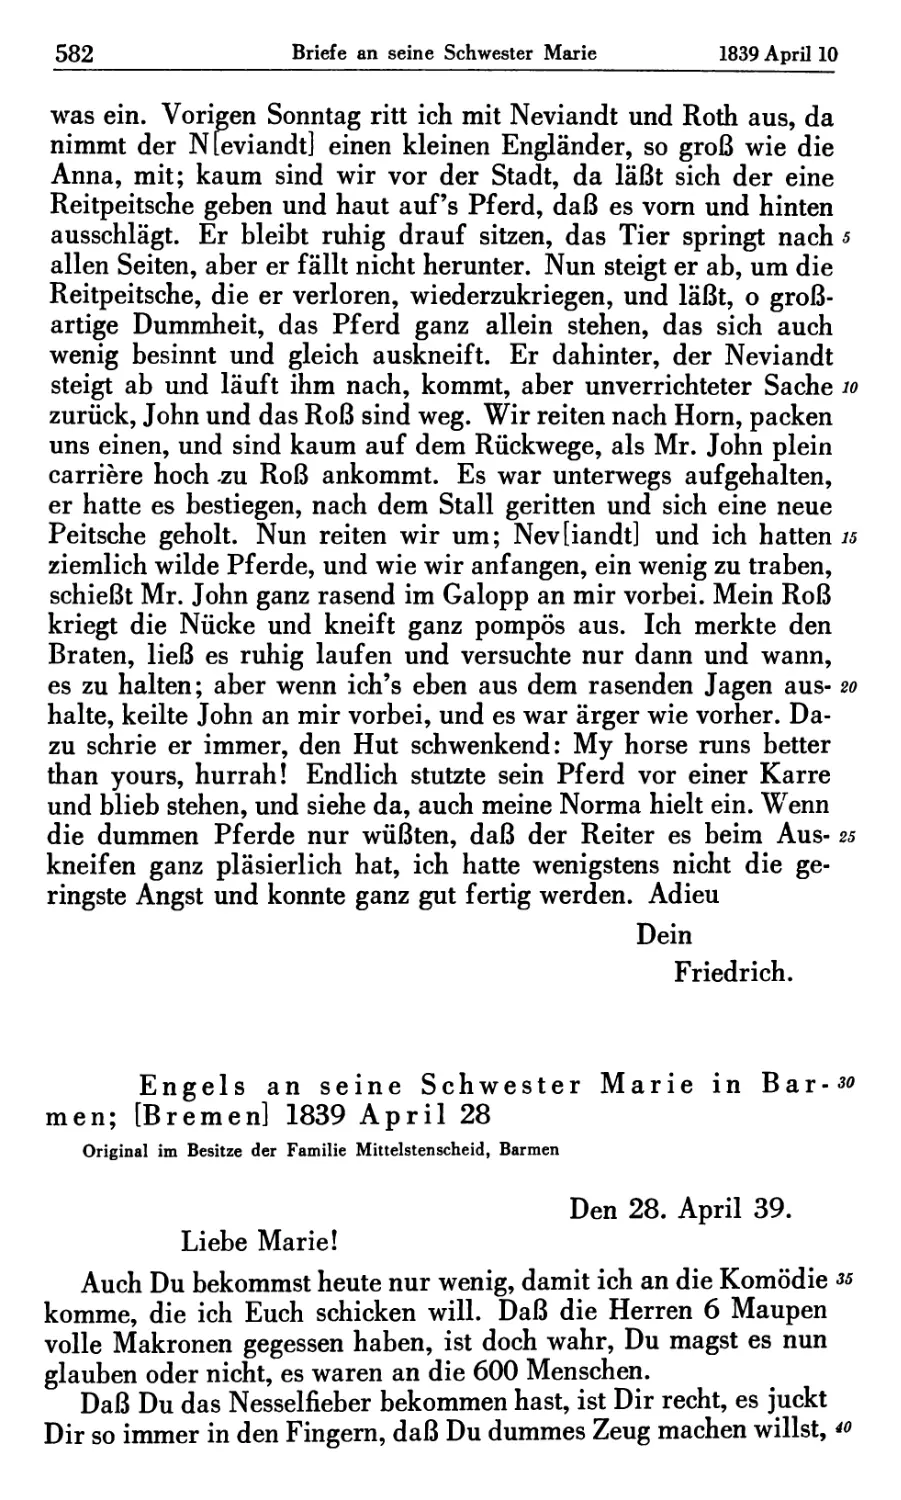 Engels an seine Schwester Marie in Barmen ; [Bremen] 1839 April 28